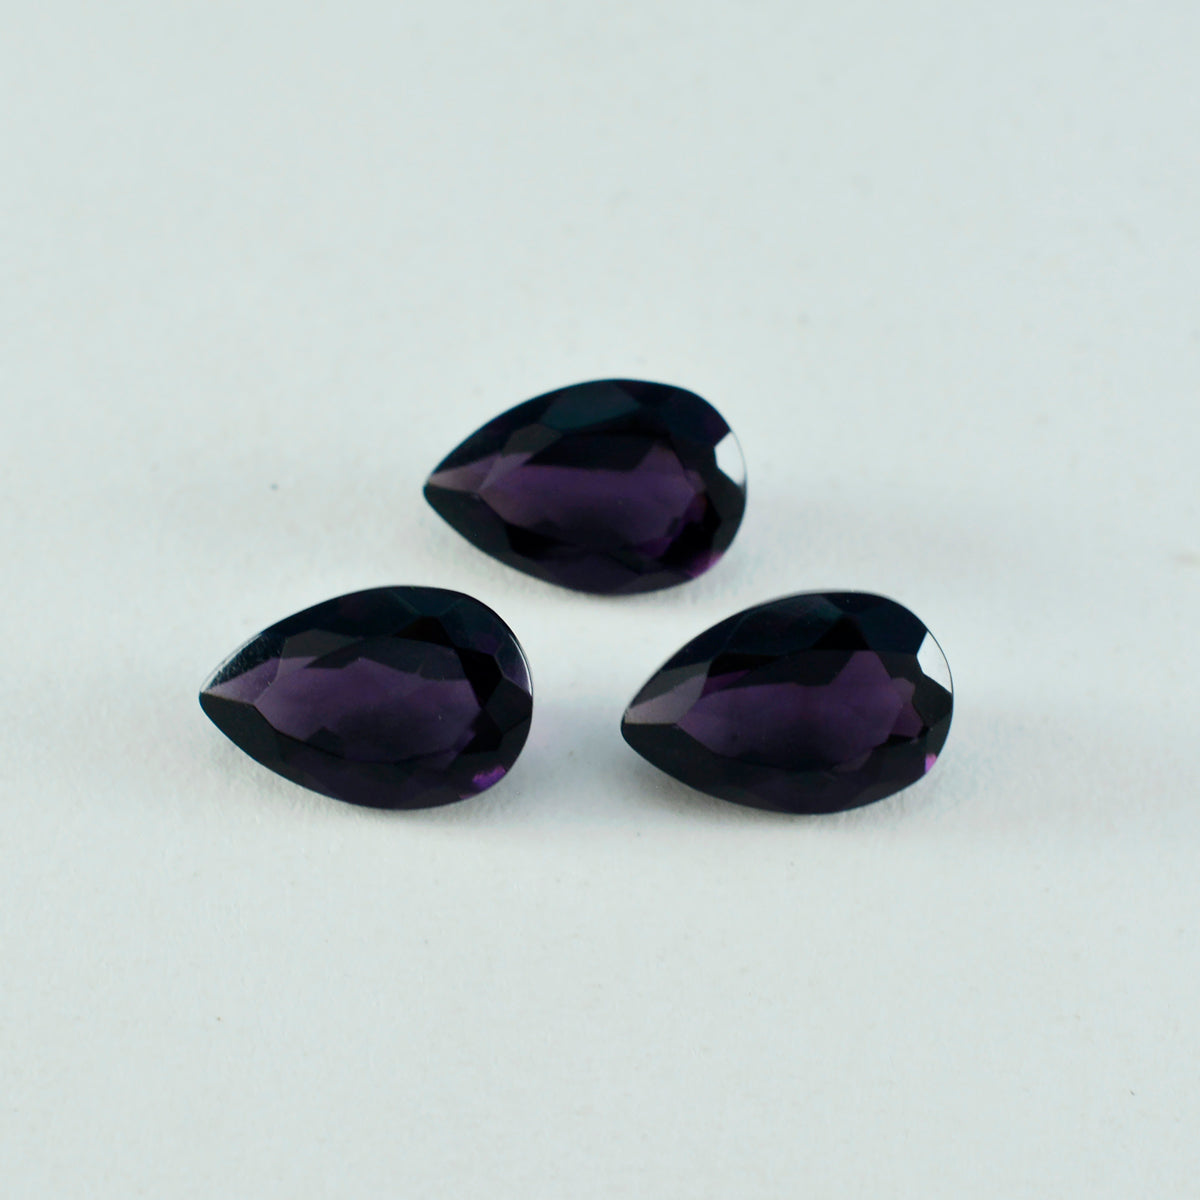 riyogems 1 шт. фиолетовый аметист cz граненый 7x10 мм грушевидной формы качество AAA рассыпной драгоценный камень